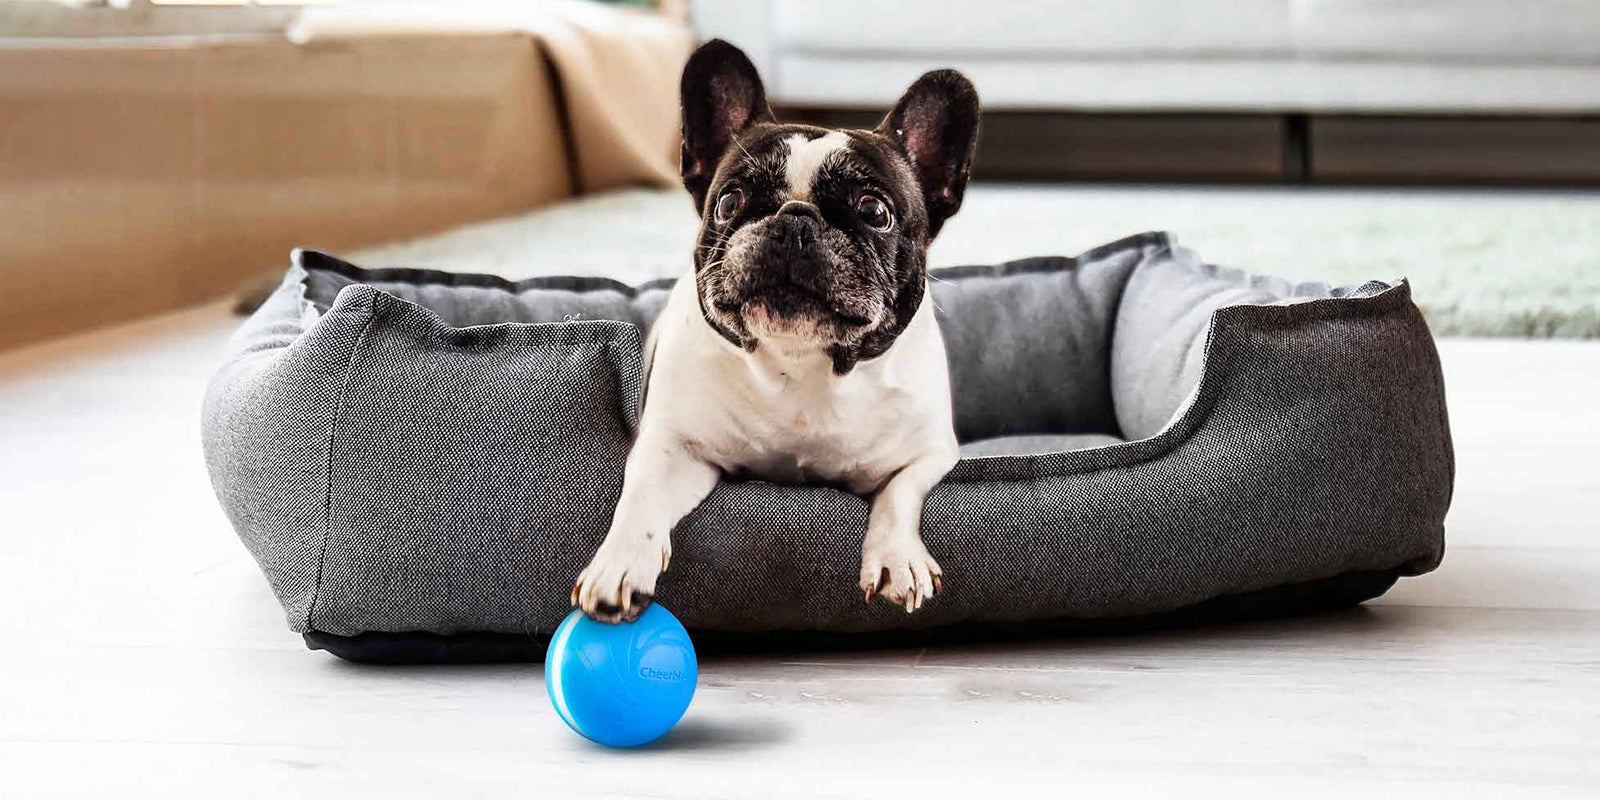 Saolife Juguetes interactivos para perros, juguetes para perros activados  por movimiento, bola malvada, juguetes de bola móvil automática para  perros